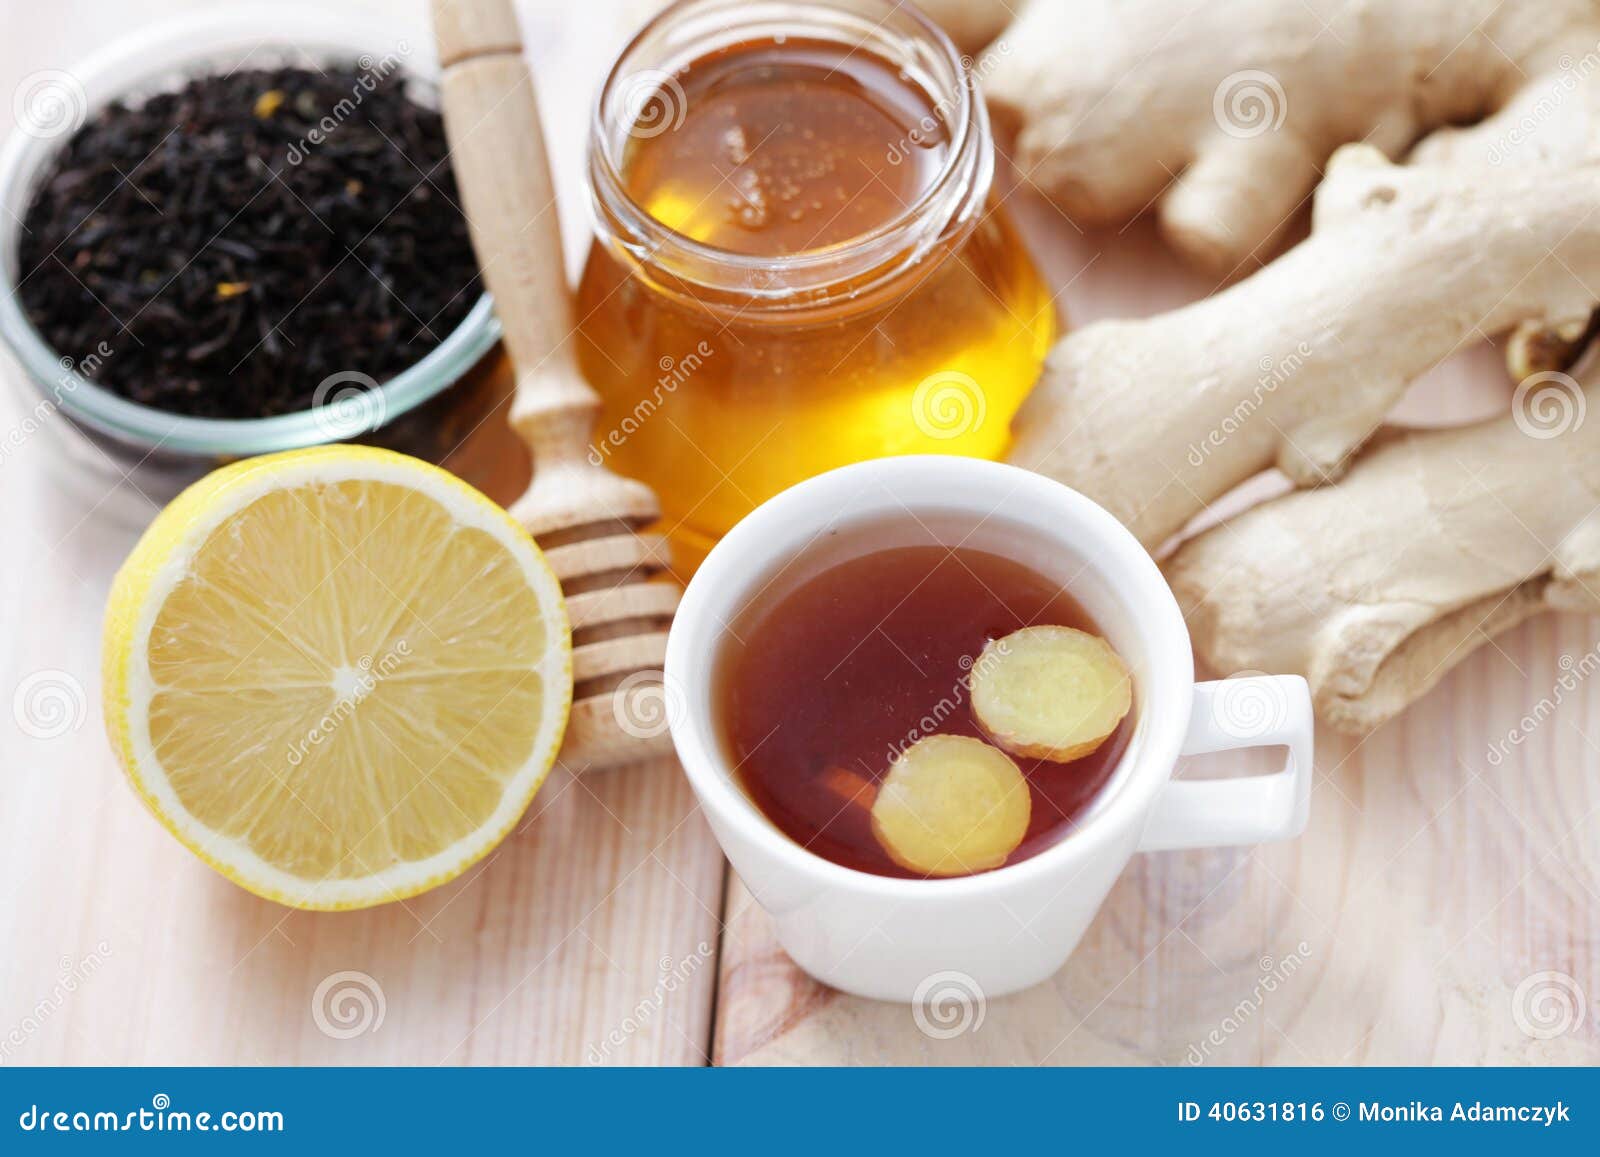 Чай с лимонной кислотой. Имбирный чай. Чай с медом. Чай с имбирем. Чай с лимоном и имбирем.